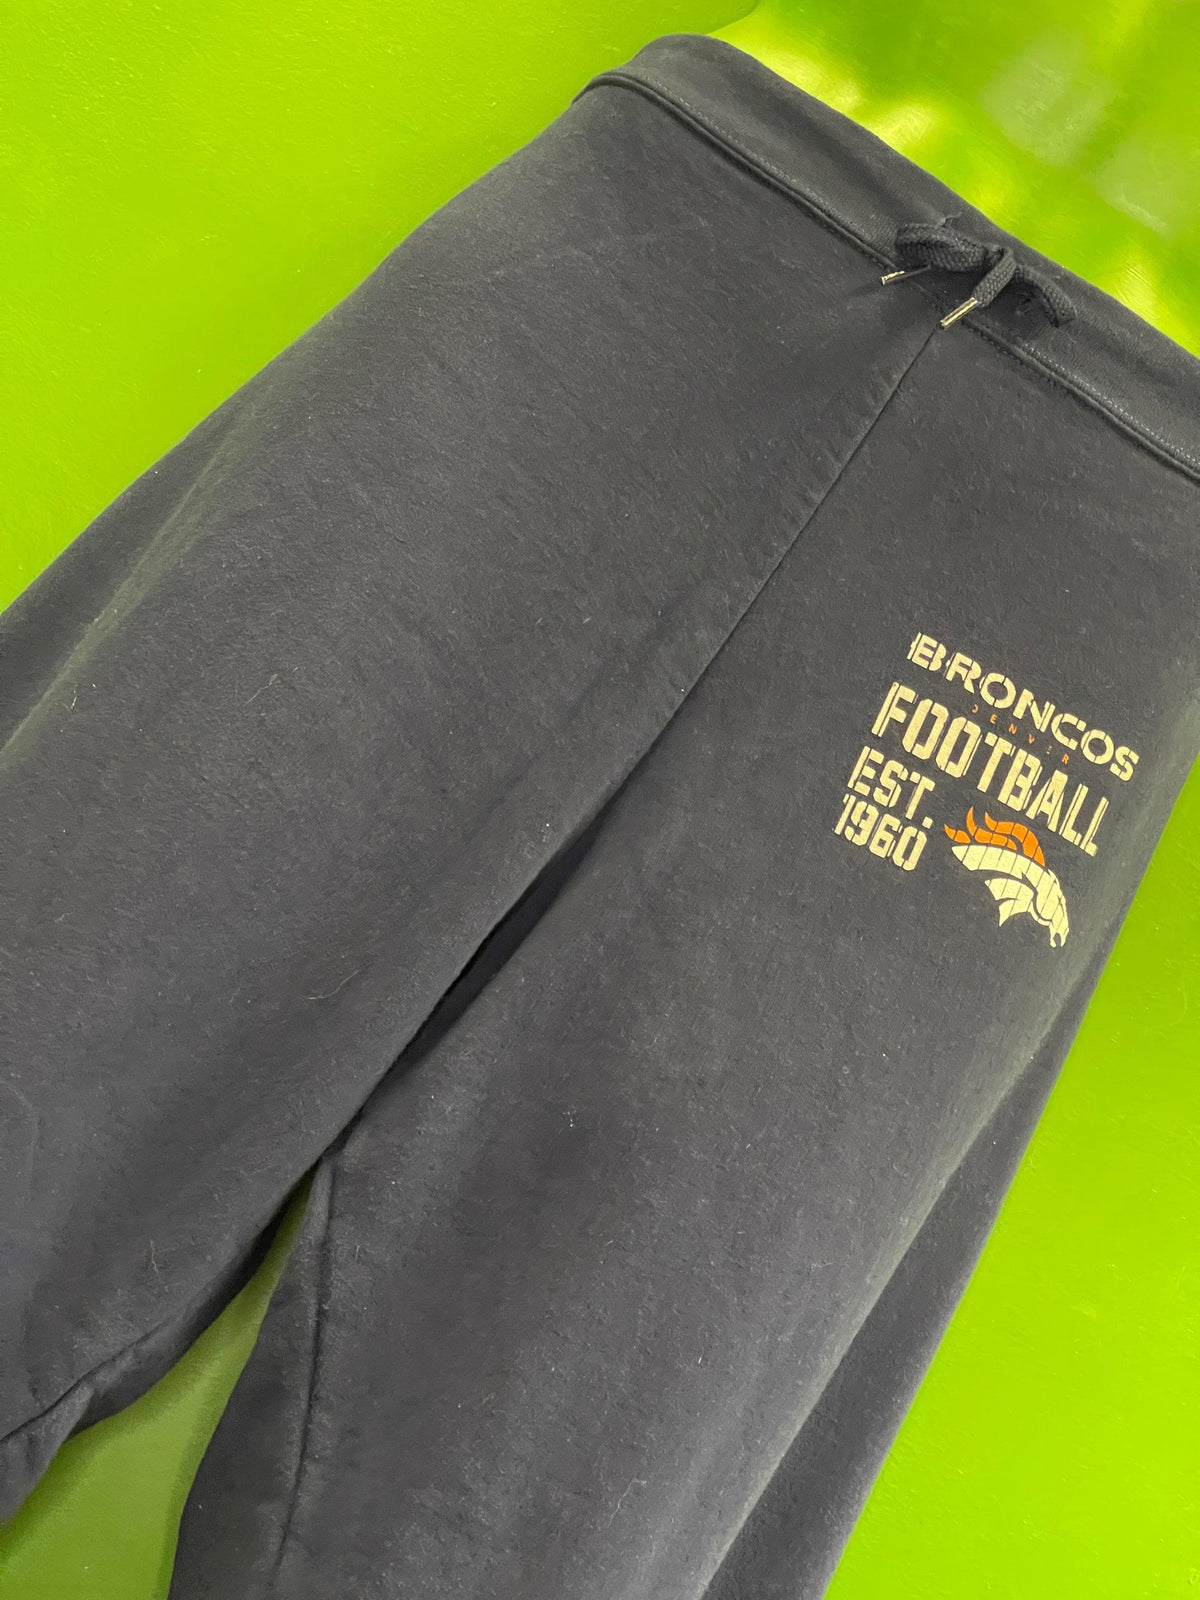 NFL Denver Broncos Knit Trousers Sweatpants Pyjama Bottoms Women's 2X-Large